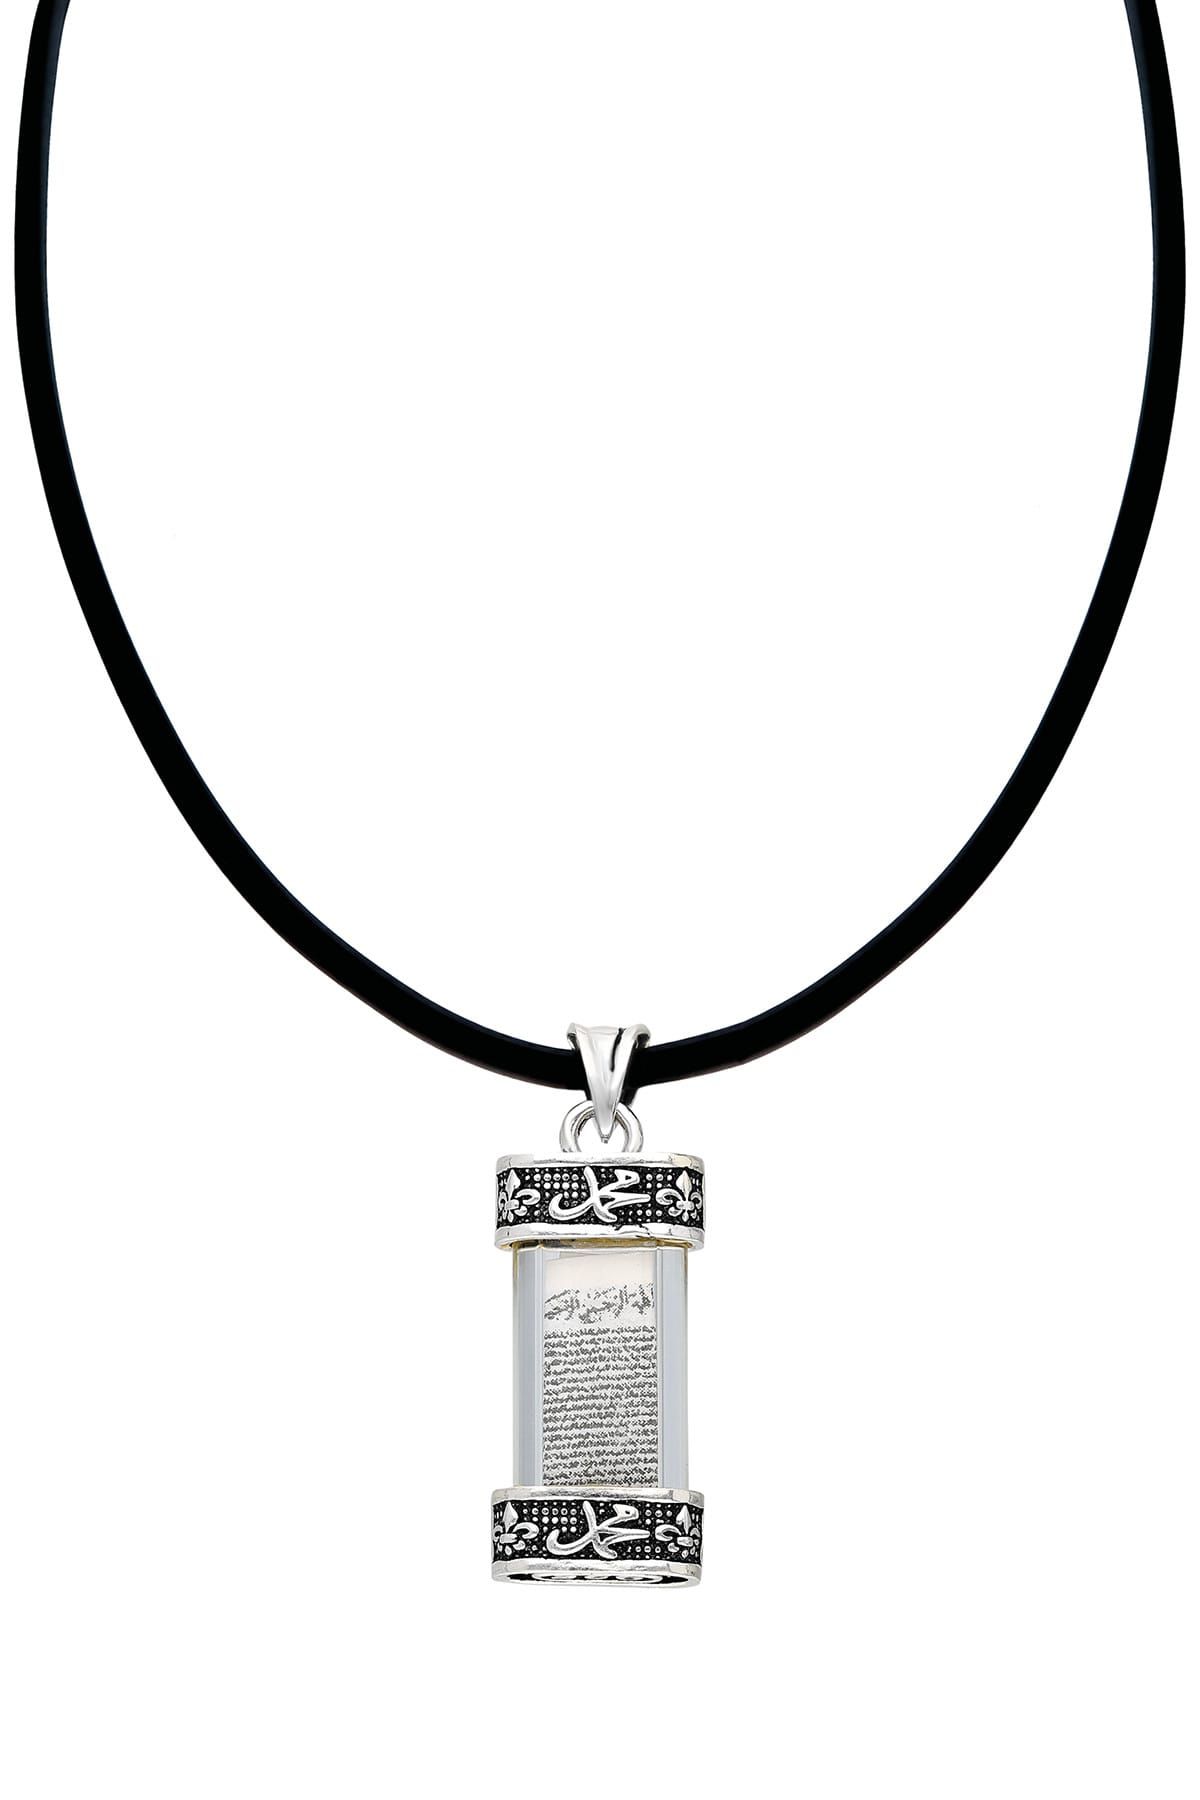 Silver Bazaar Camlı Ayet-El Kürsi Dualı Hz. Muhammed Peygamber Yazılı Gümüş Kolye